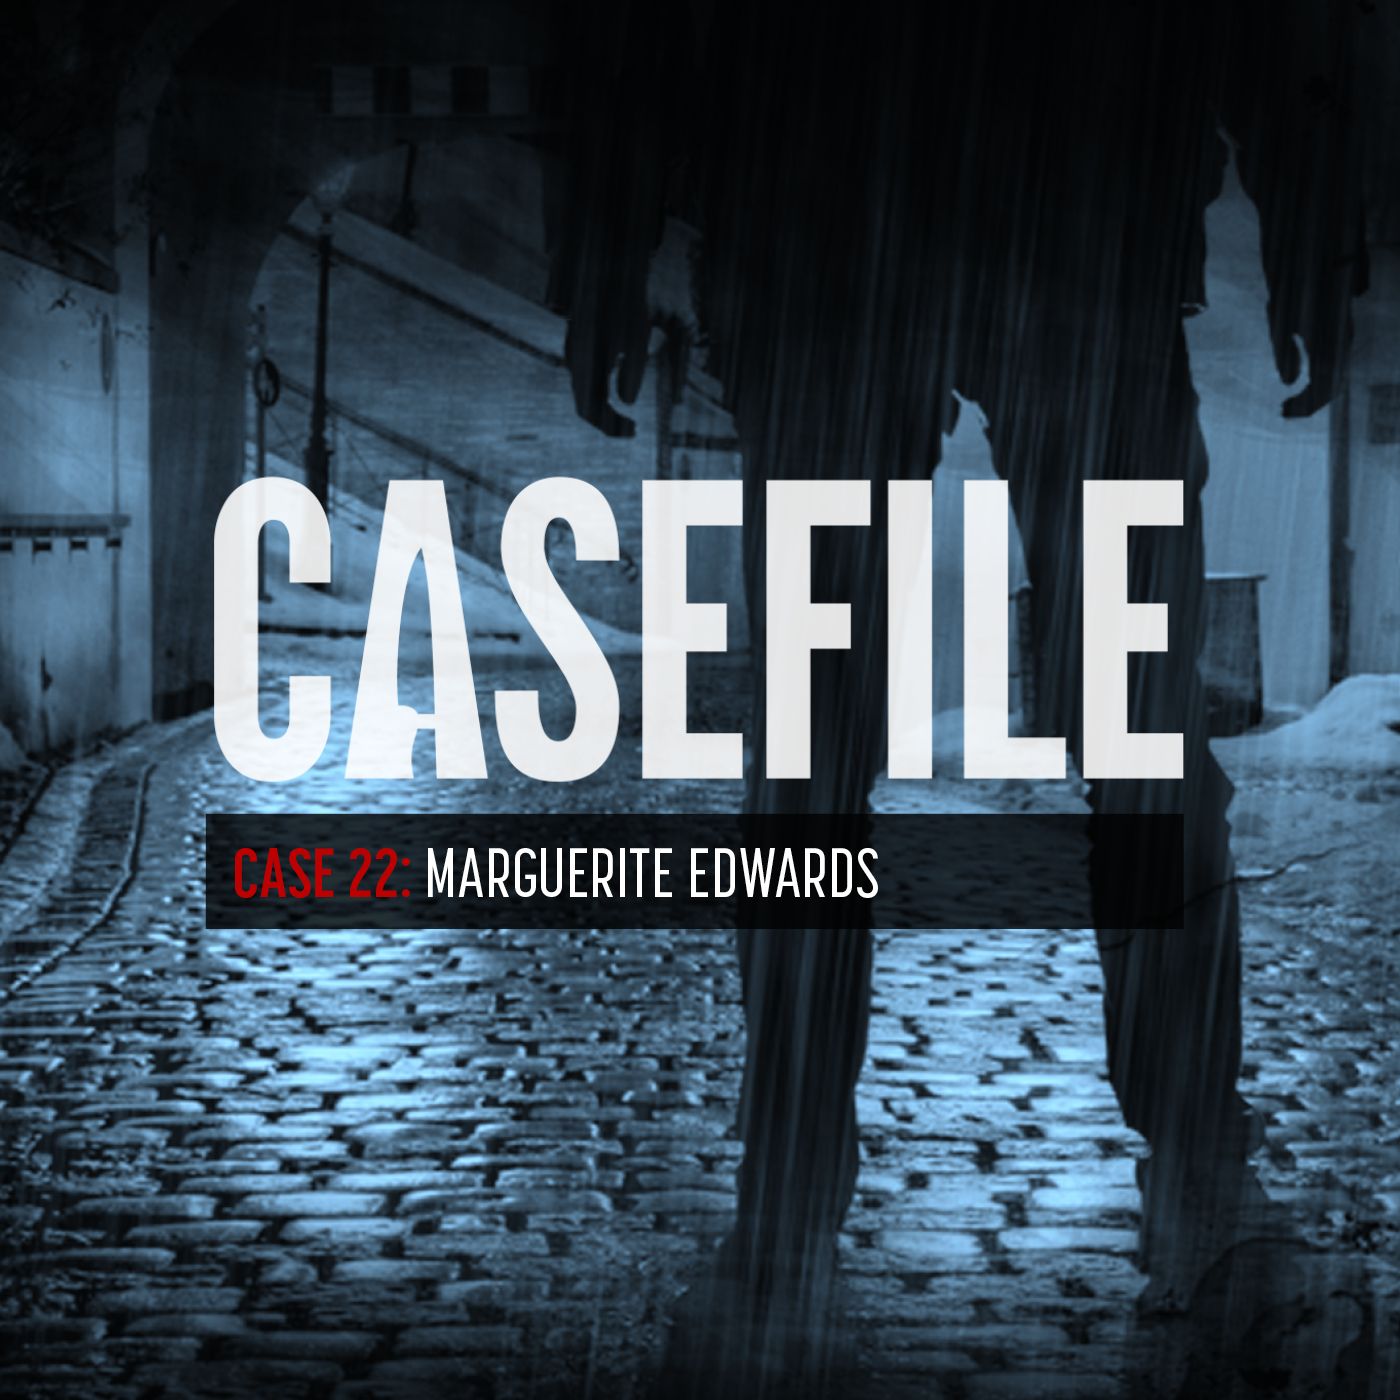 Case 22: Marguerite Edwards